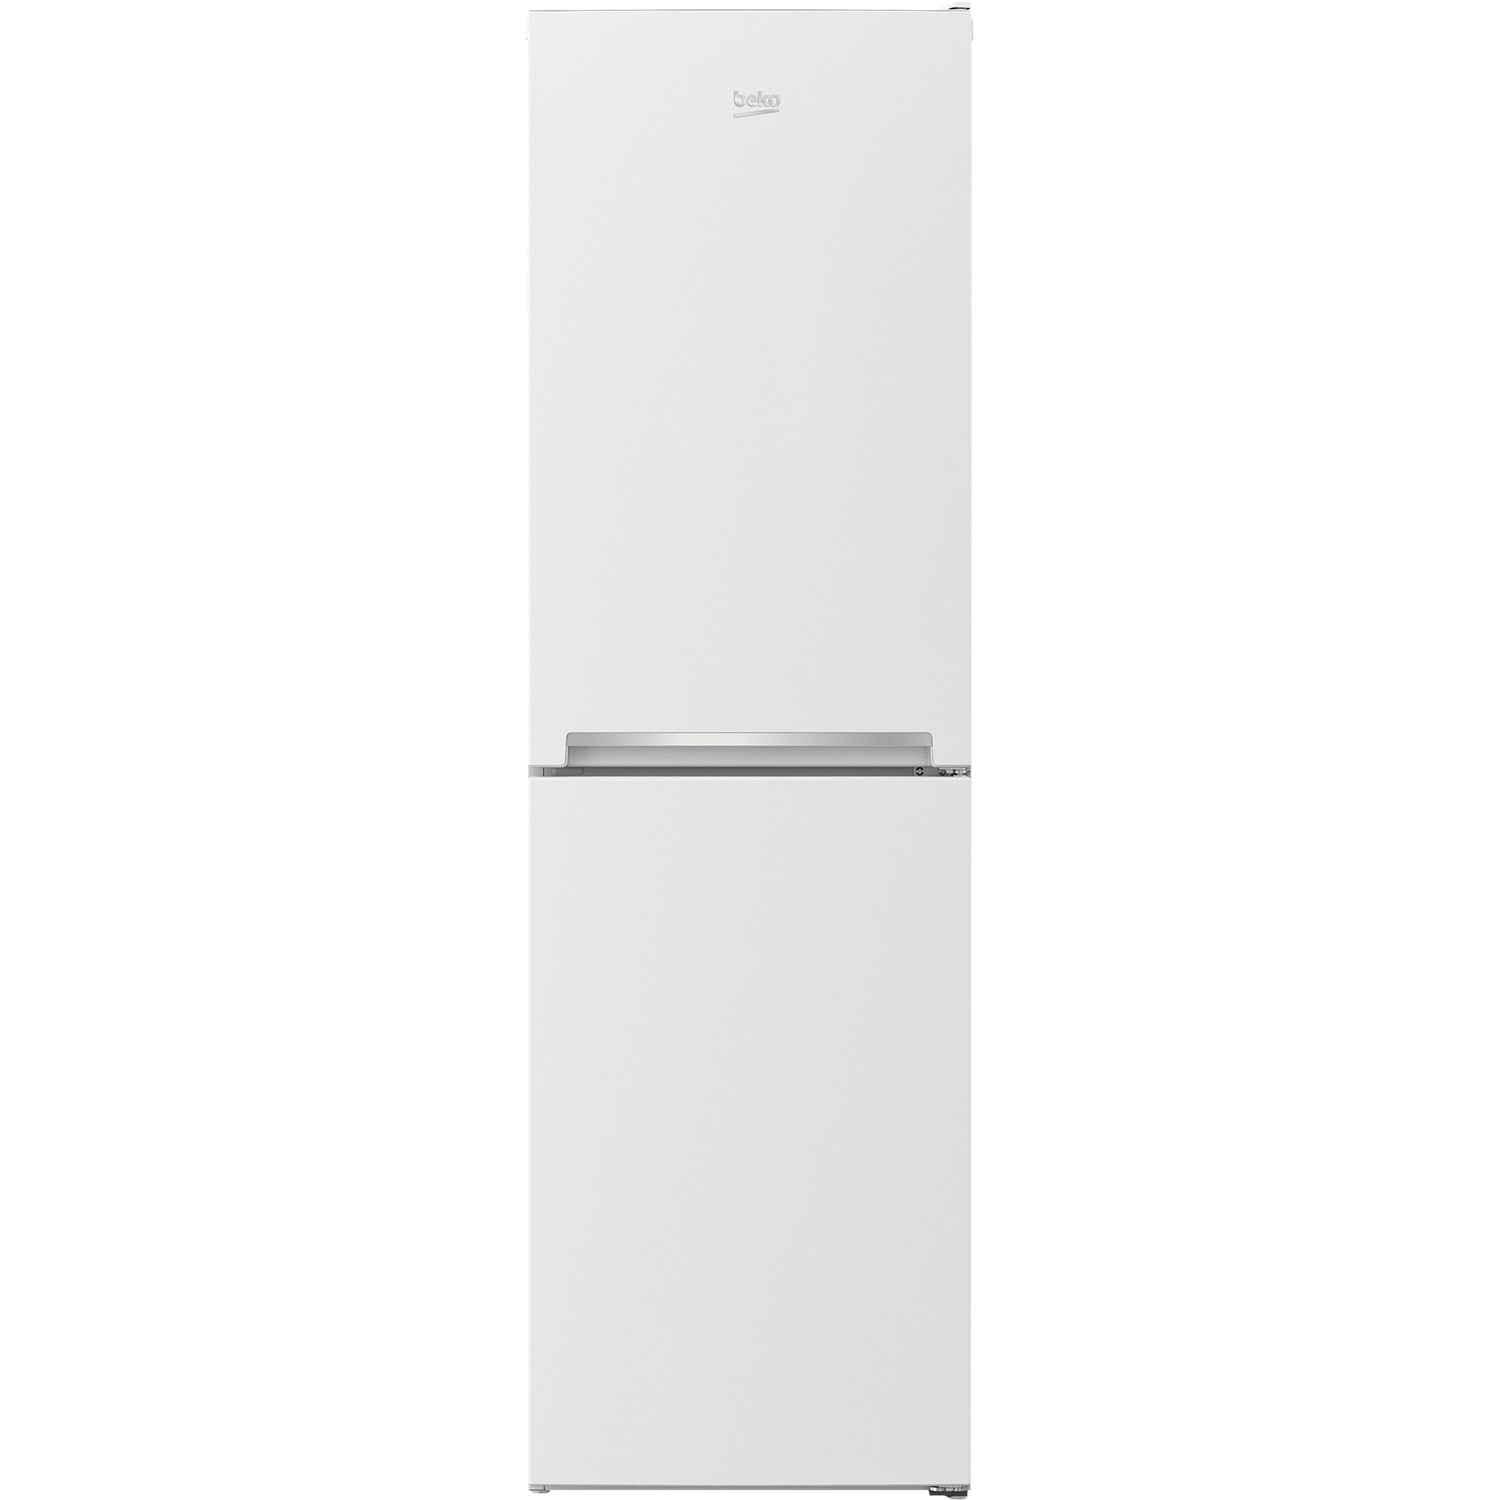 Beko 270 Litre Freestanding Fridge Freezer - White